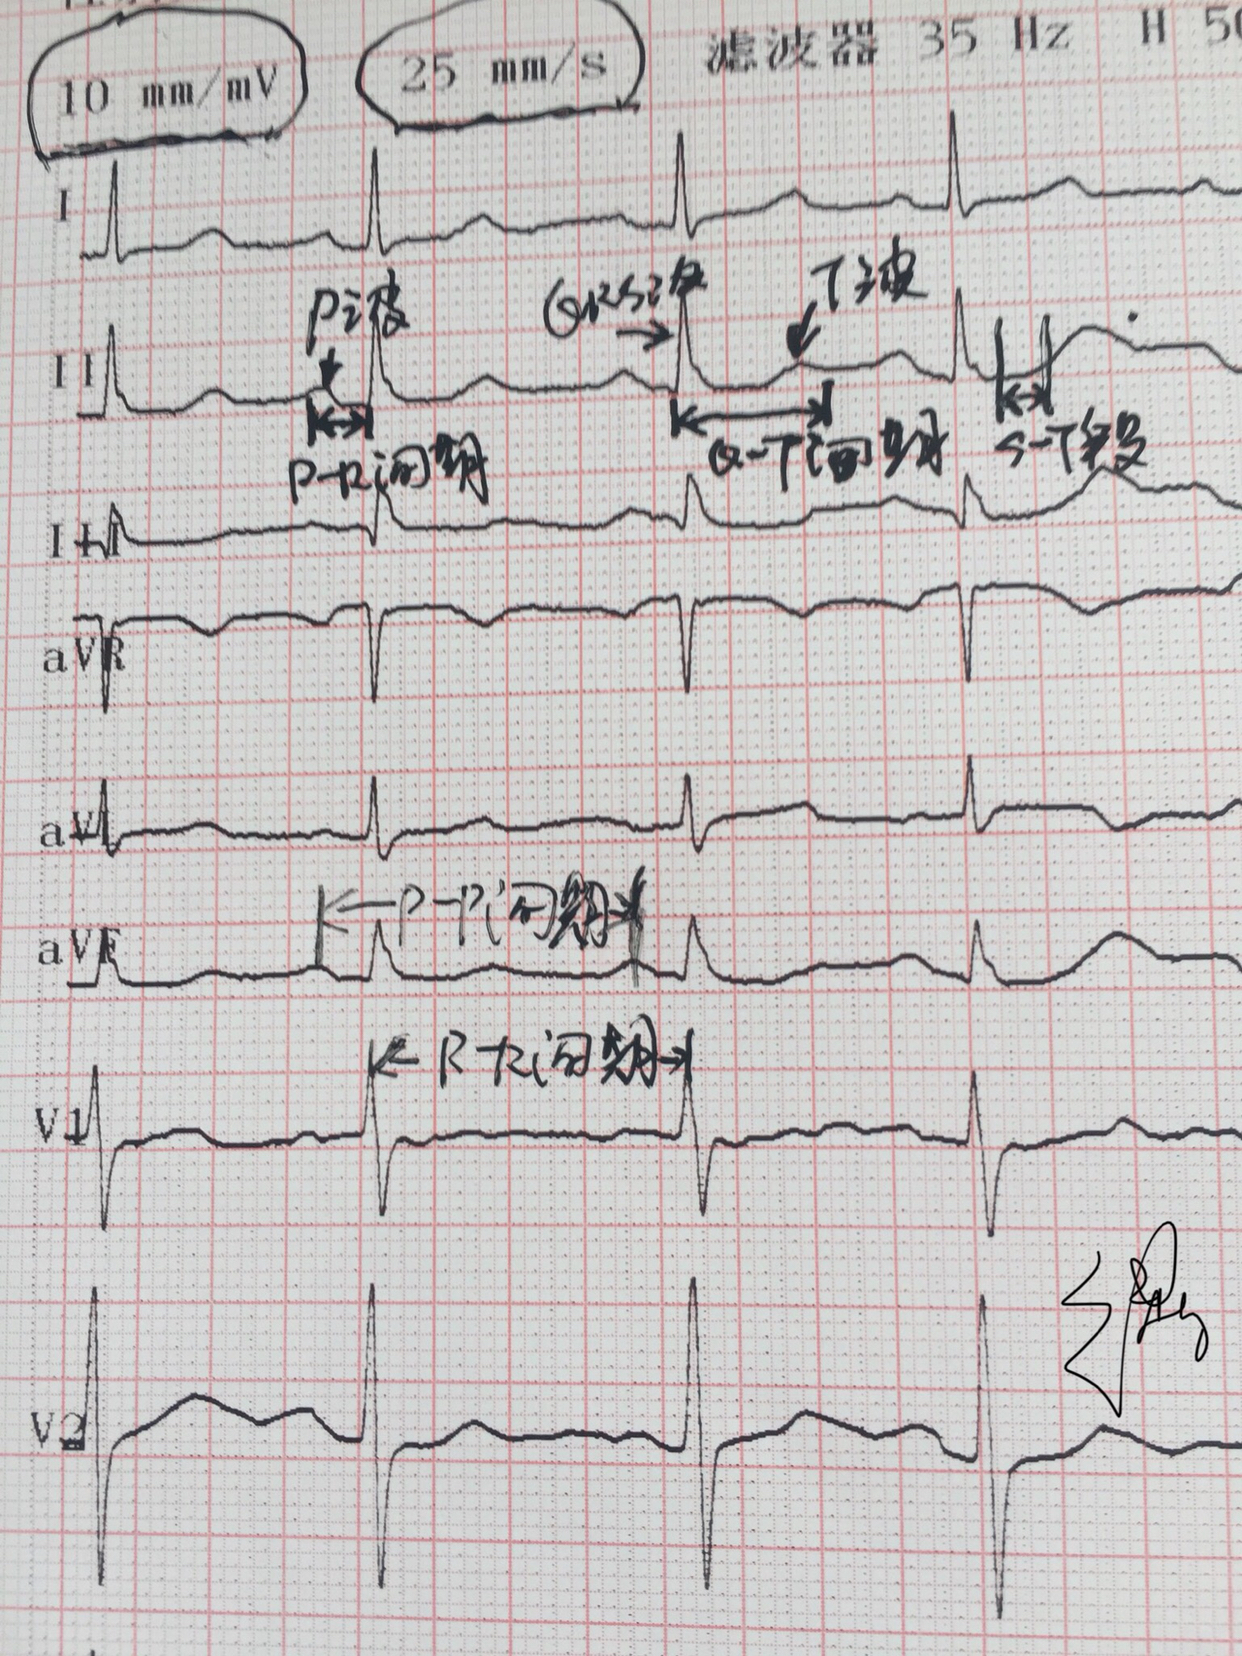 心电图rv5十sv1正常值图片